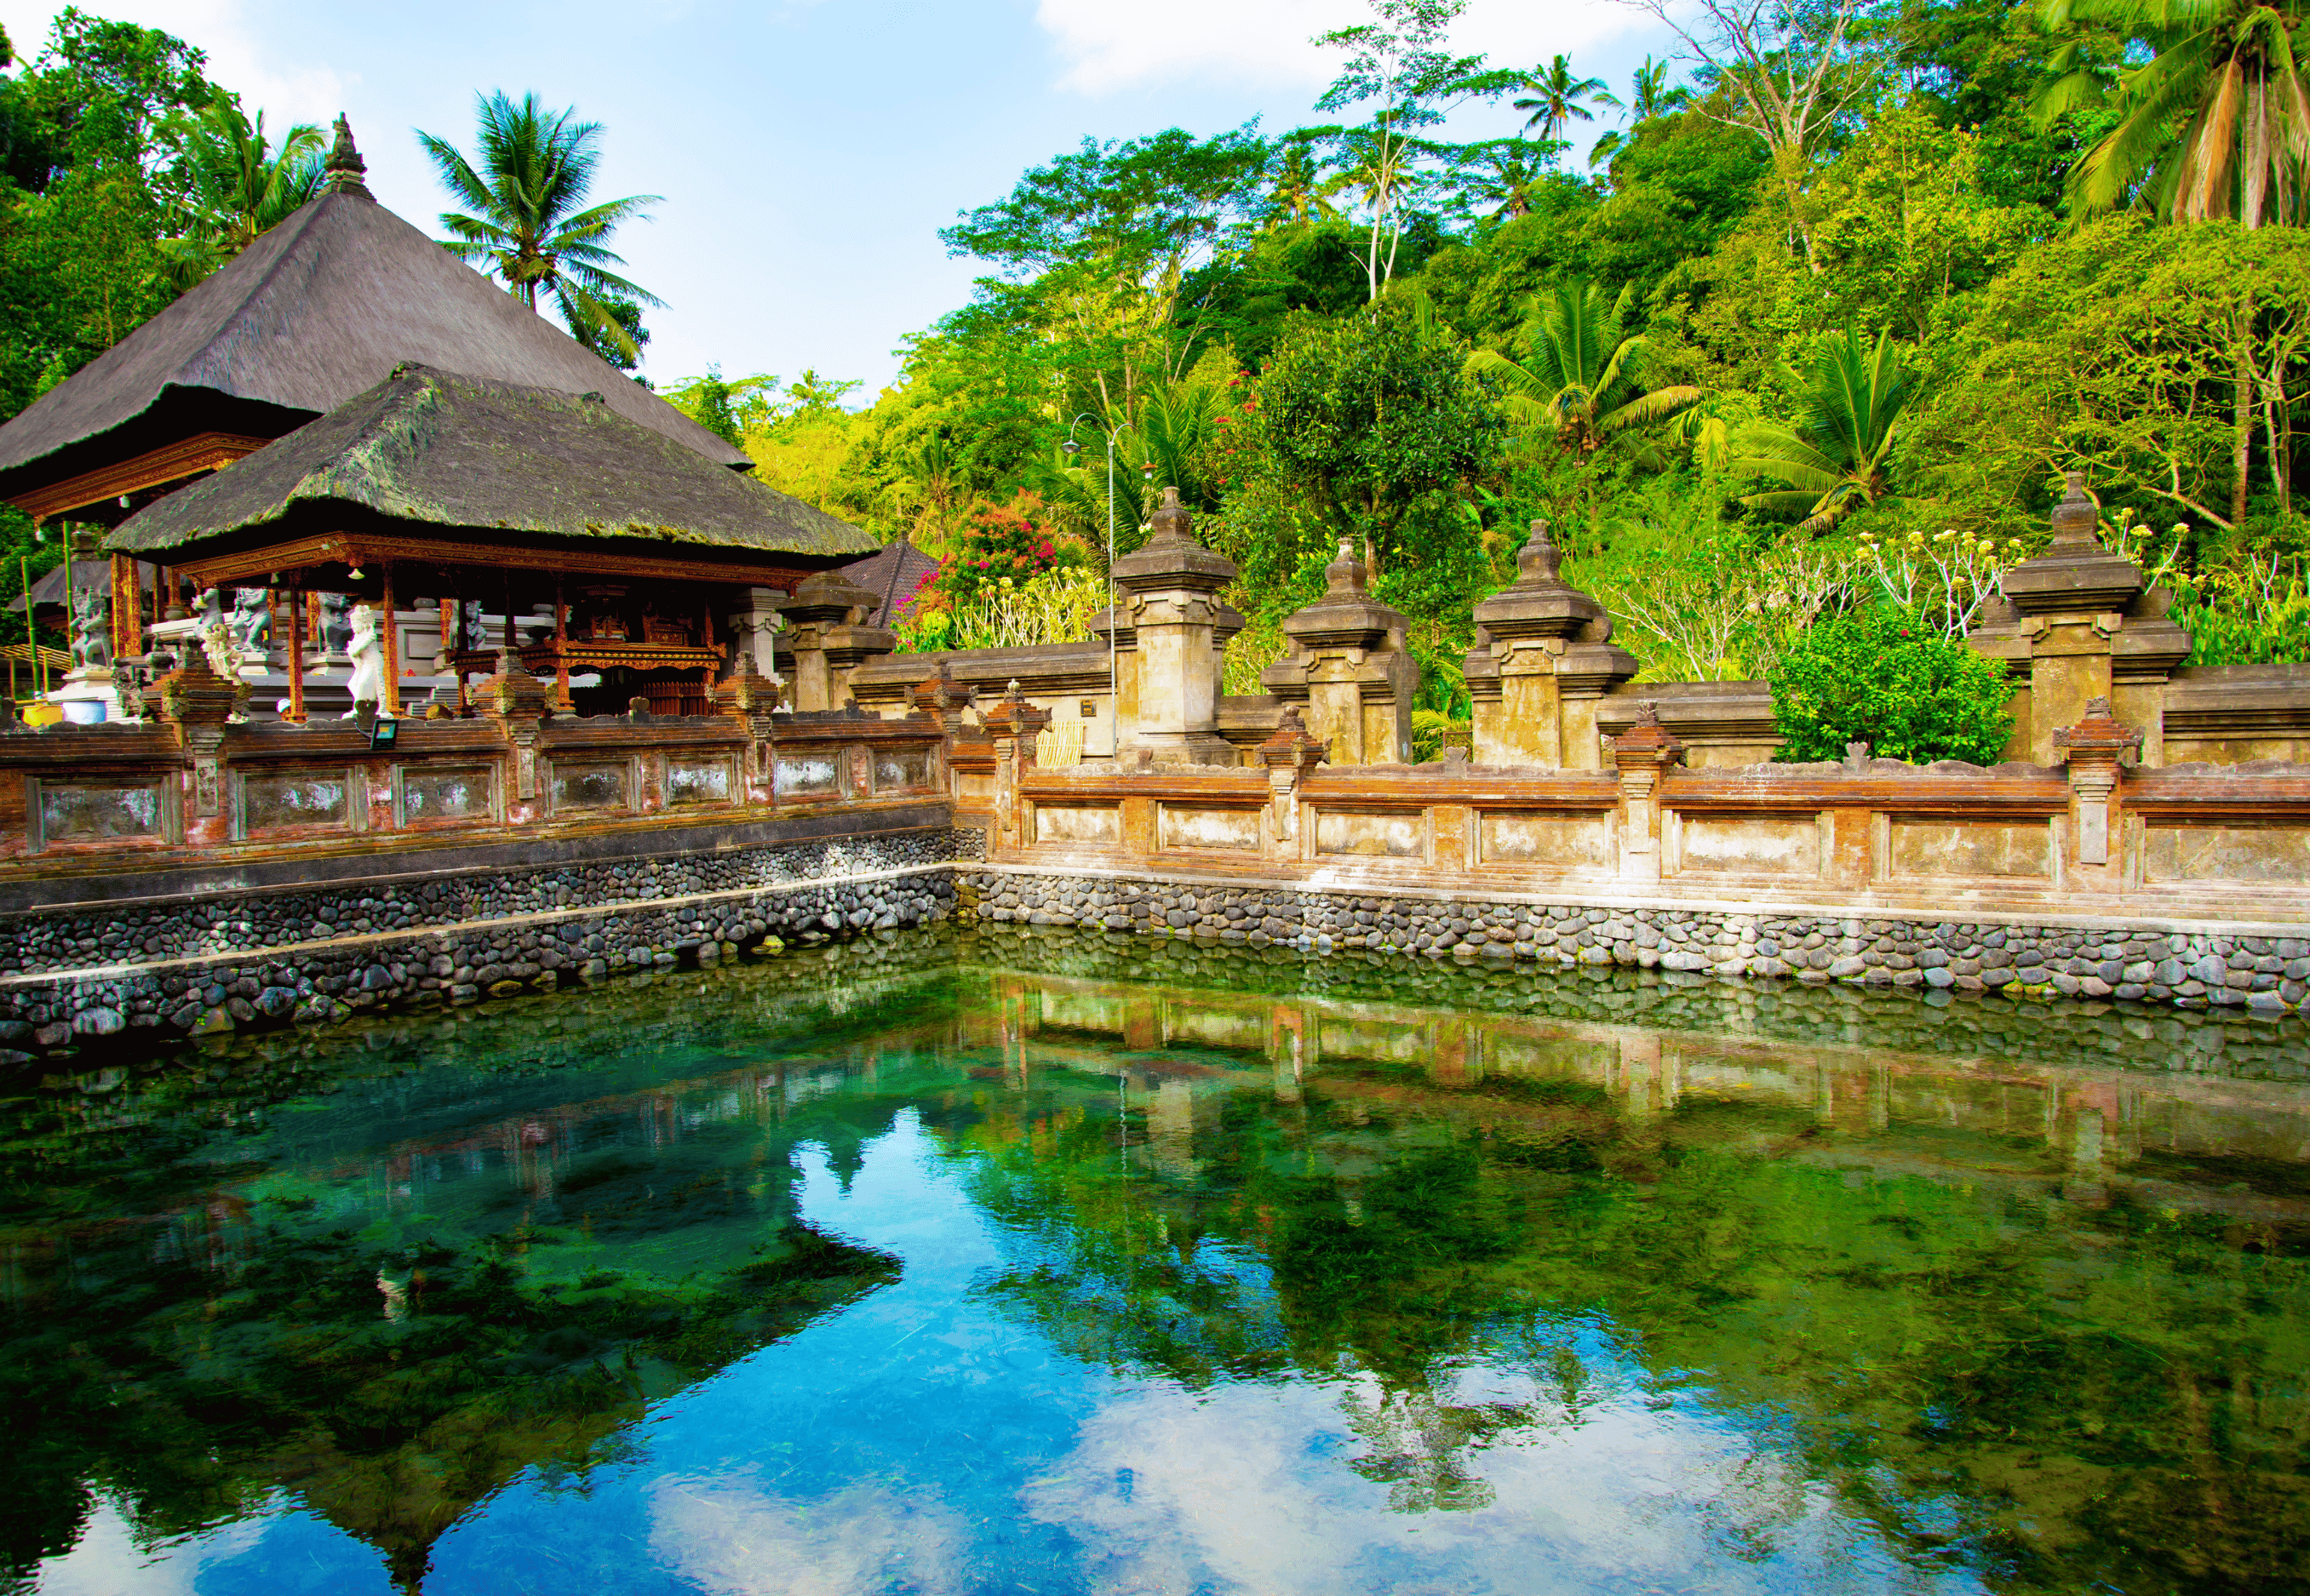 Không Chỉ Là Một điểm Tham Quan Du Lịch Bali Phổ Biến Mà Còn Là Biểu Tượng Của Sự Kết Nối Giữa Lịch Sử, Truyền Thống Và Tâm Linh Của Người Dân địa Phương